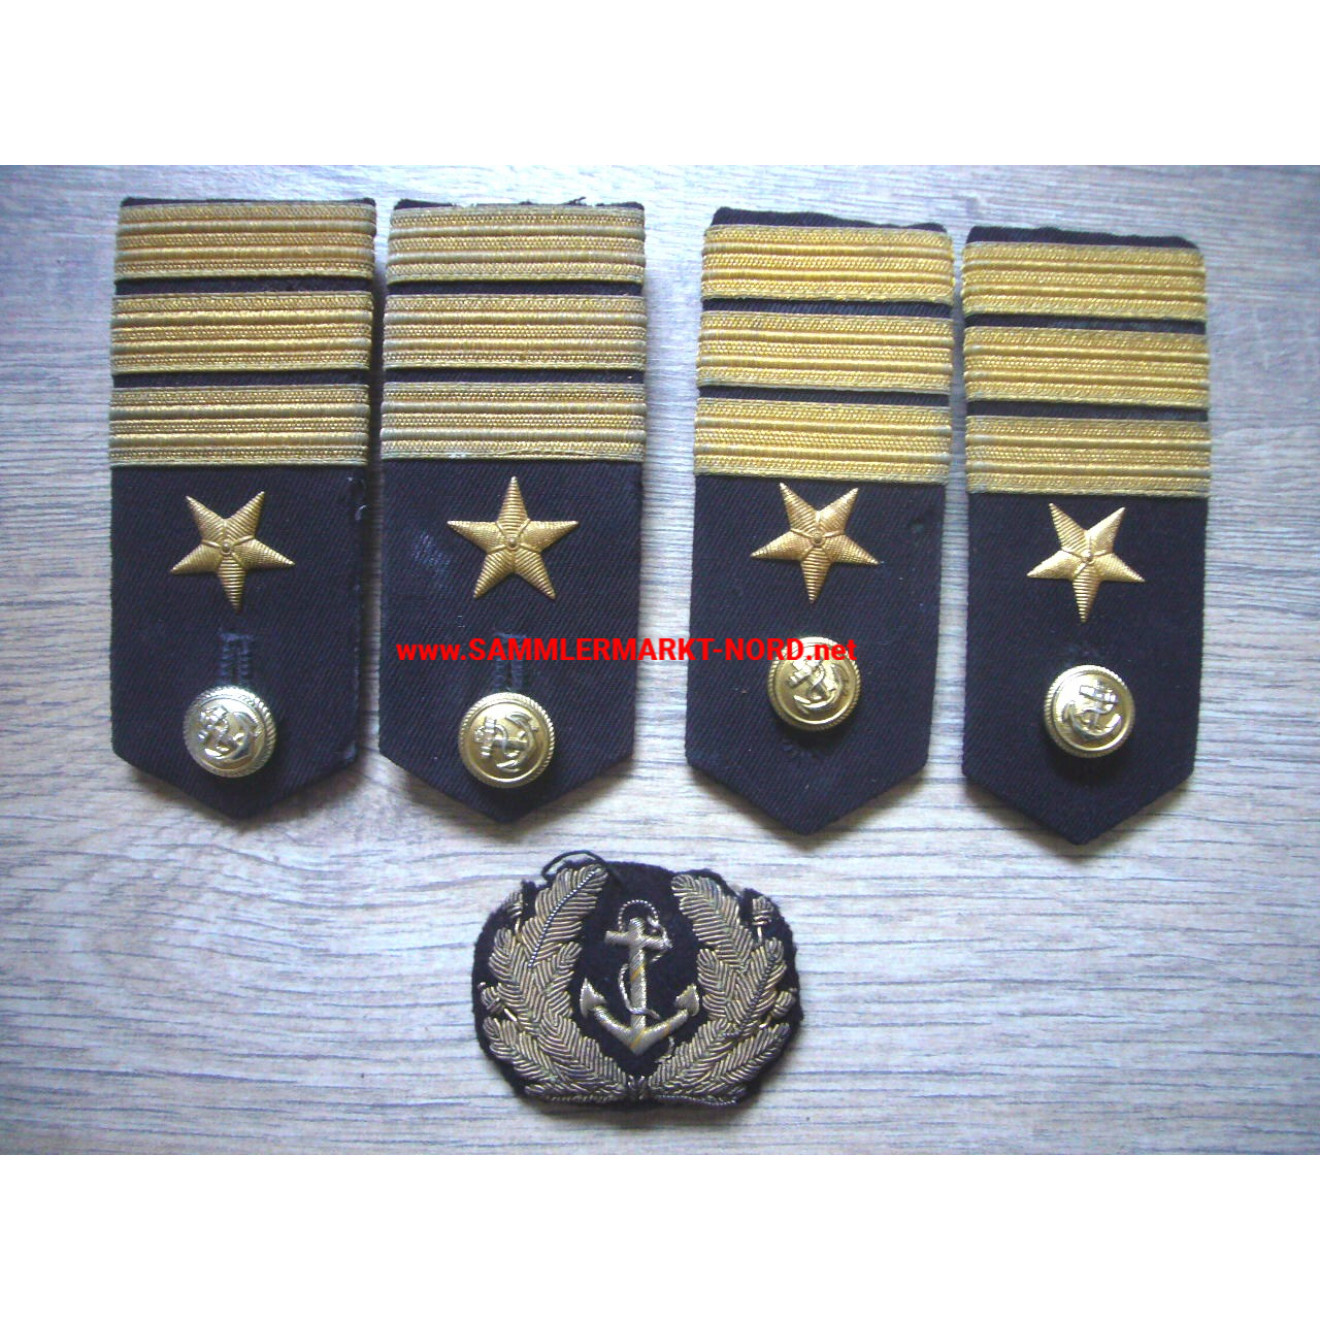 Bundesmarine - Uniformteile für einen Offizier